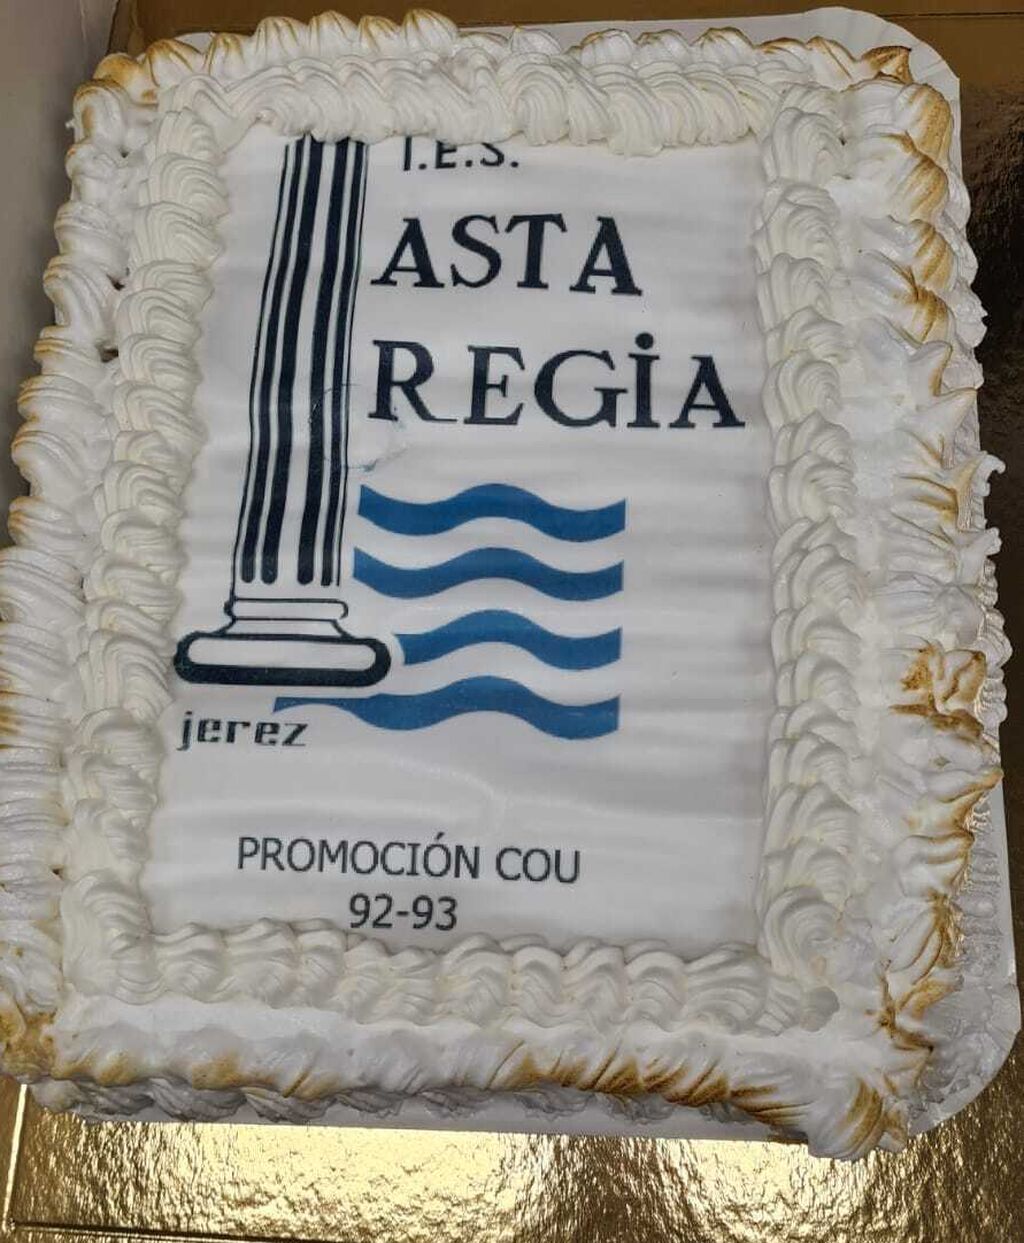 Los alumnos de la promoci&oacute;n 89-93 del Asta Regia celebran el 30 aniversario de su graduaci&oacute;n.